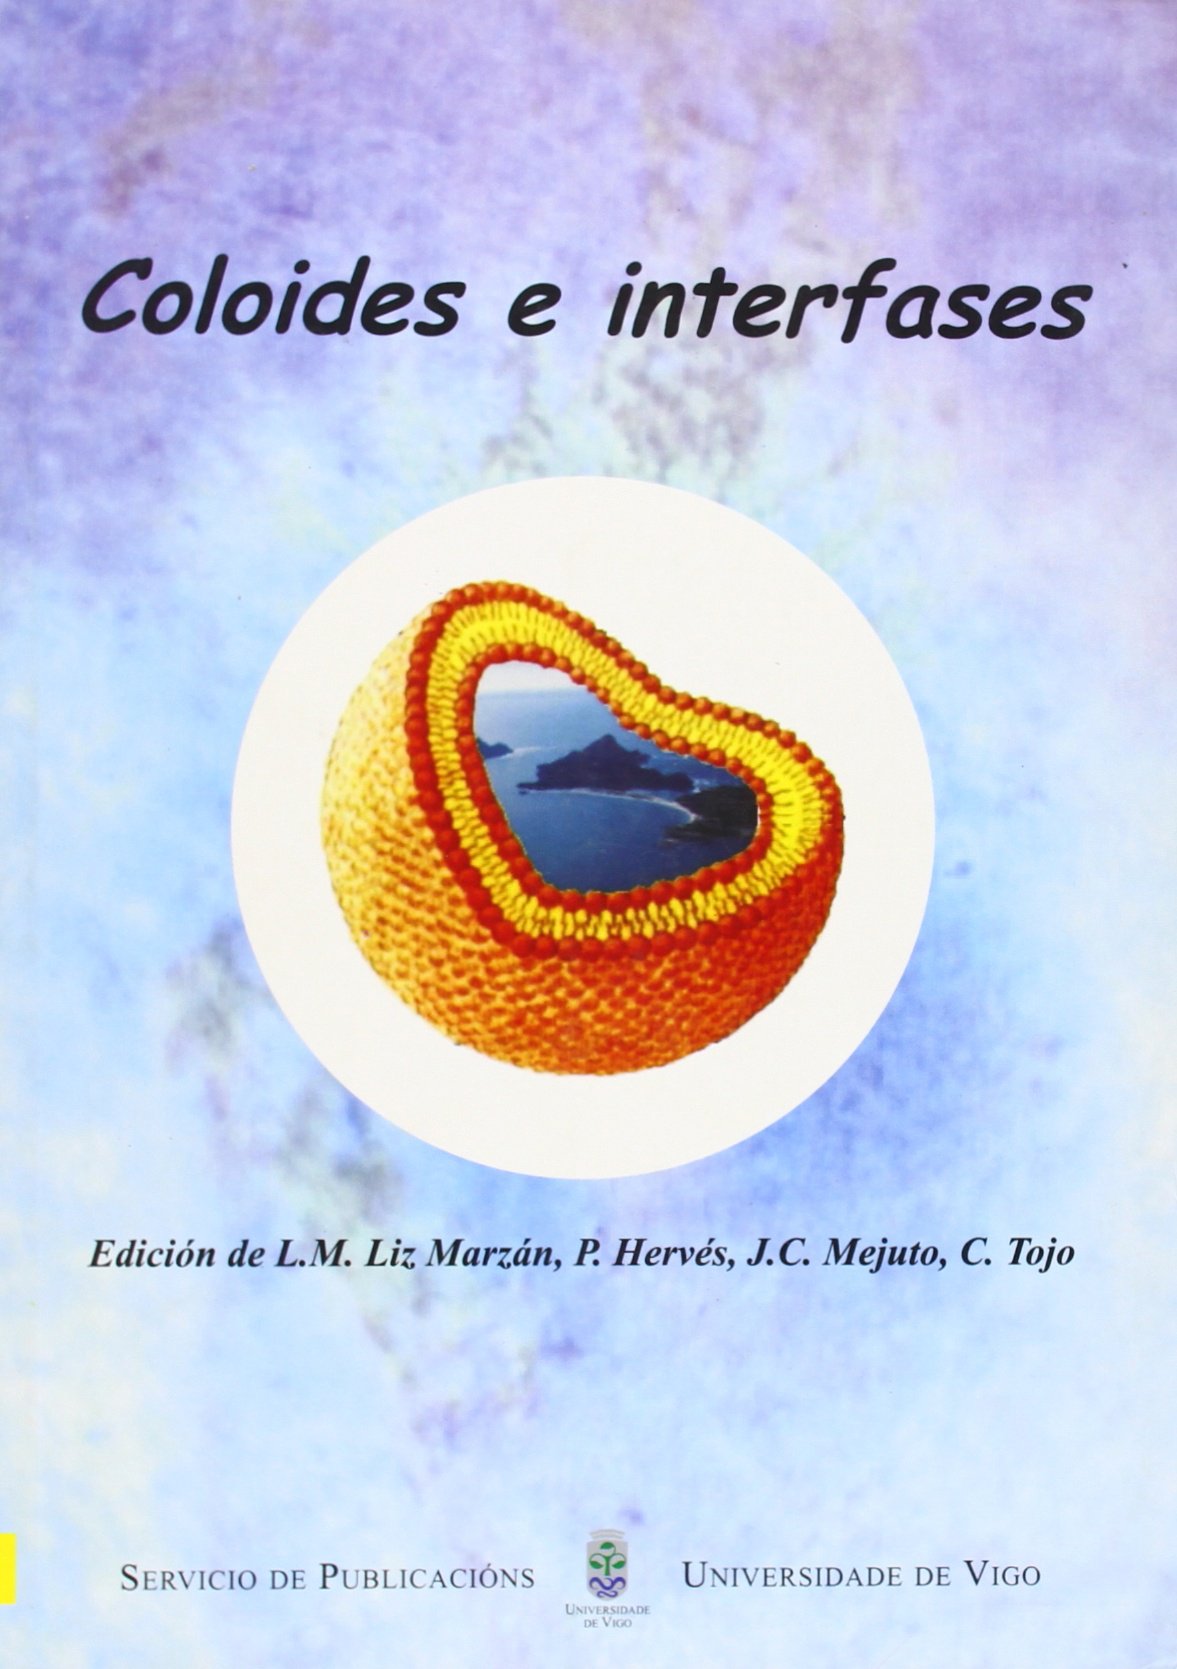 Imagen de portada del libro Coloides e interfases